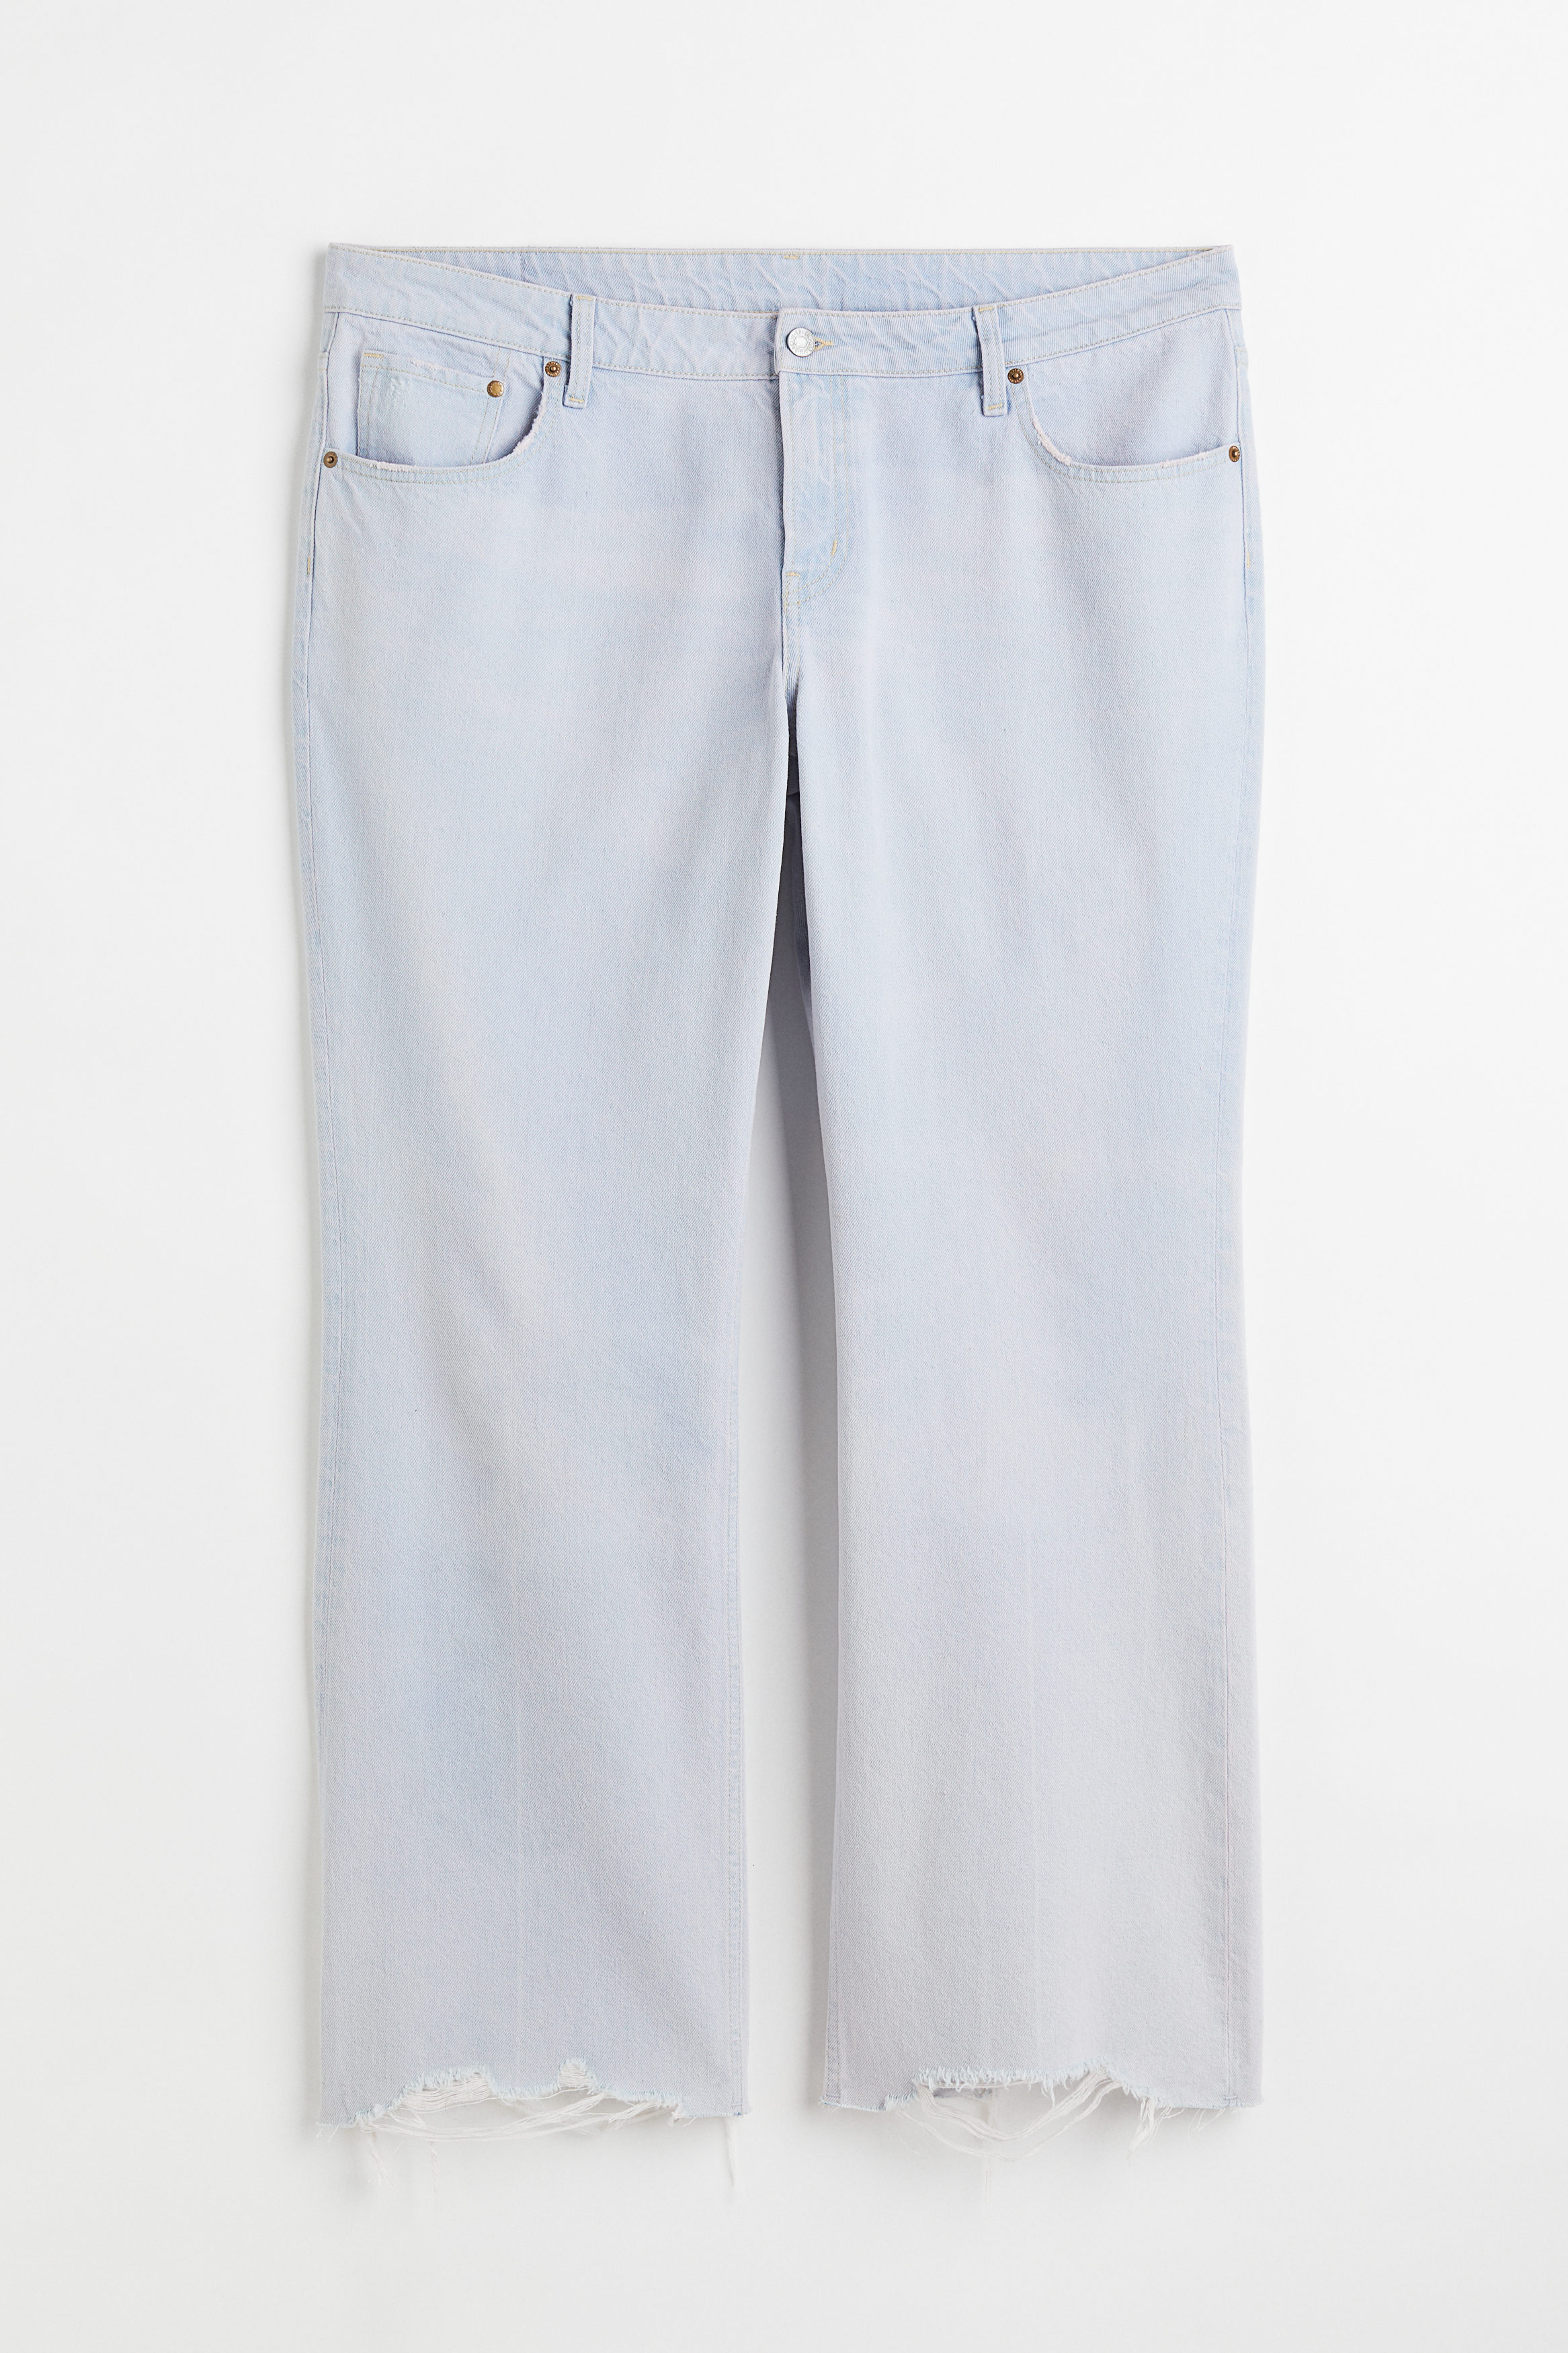 Billede af H&m+ 90s Flare Low Jeans Sart Denimblå, Bootcut jeans. Farve: Pale denim blue I størrelse 44